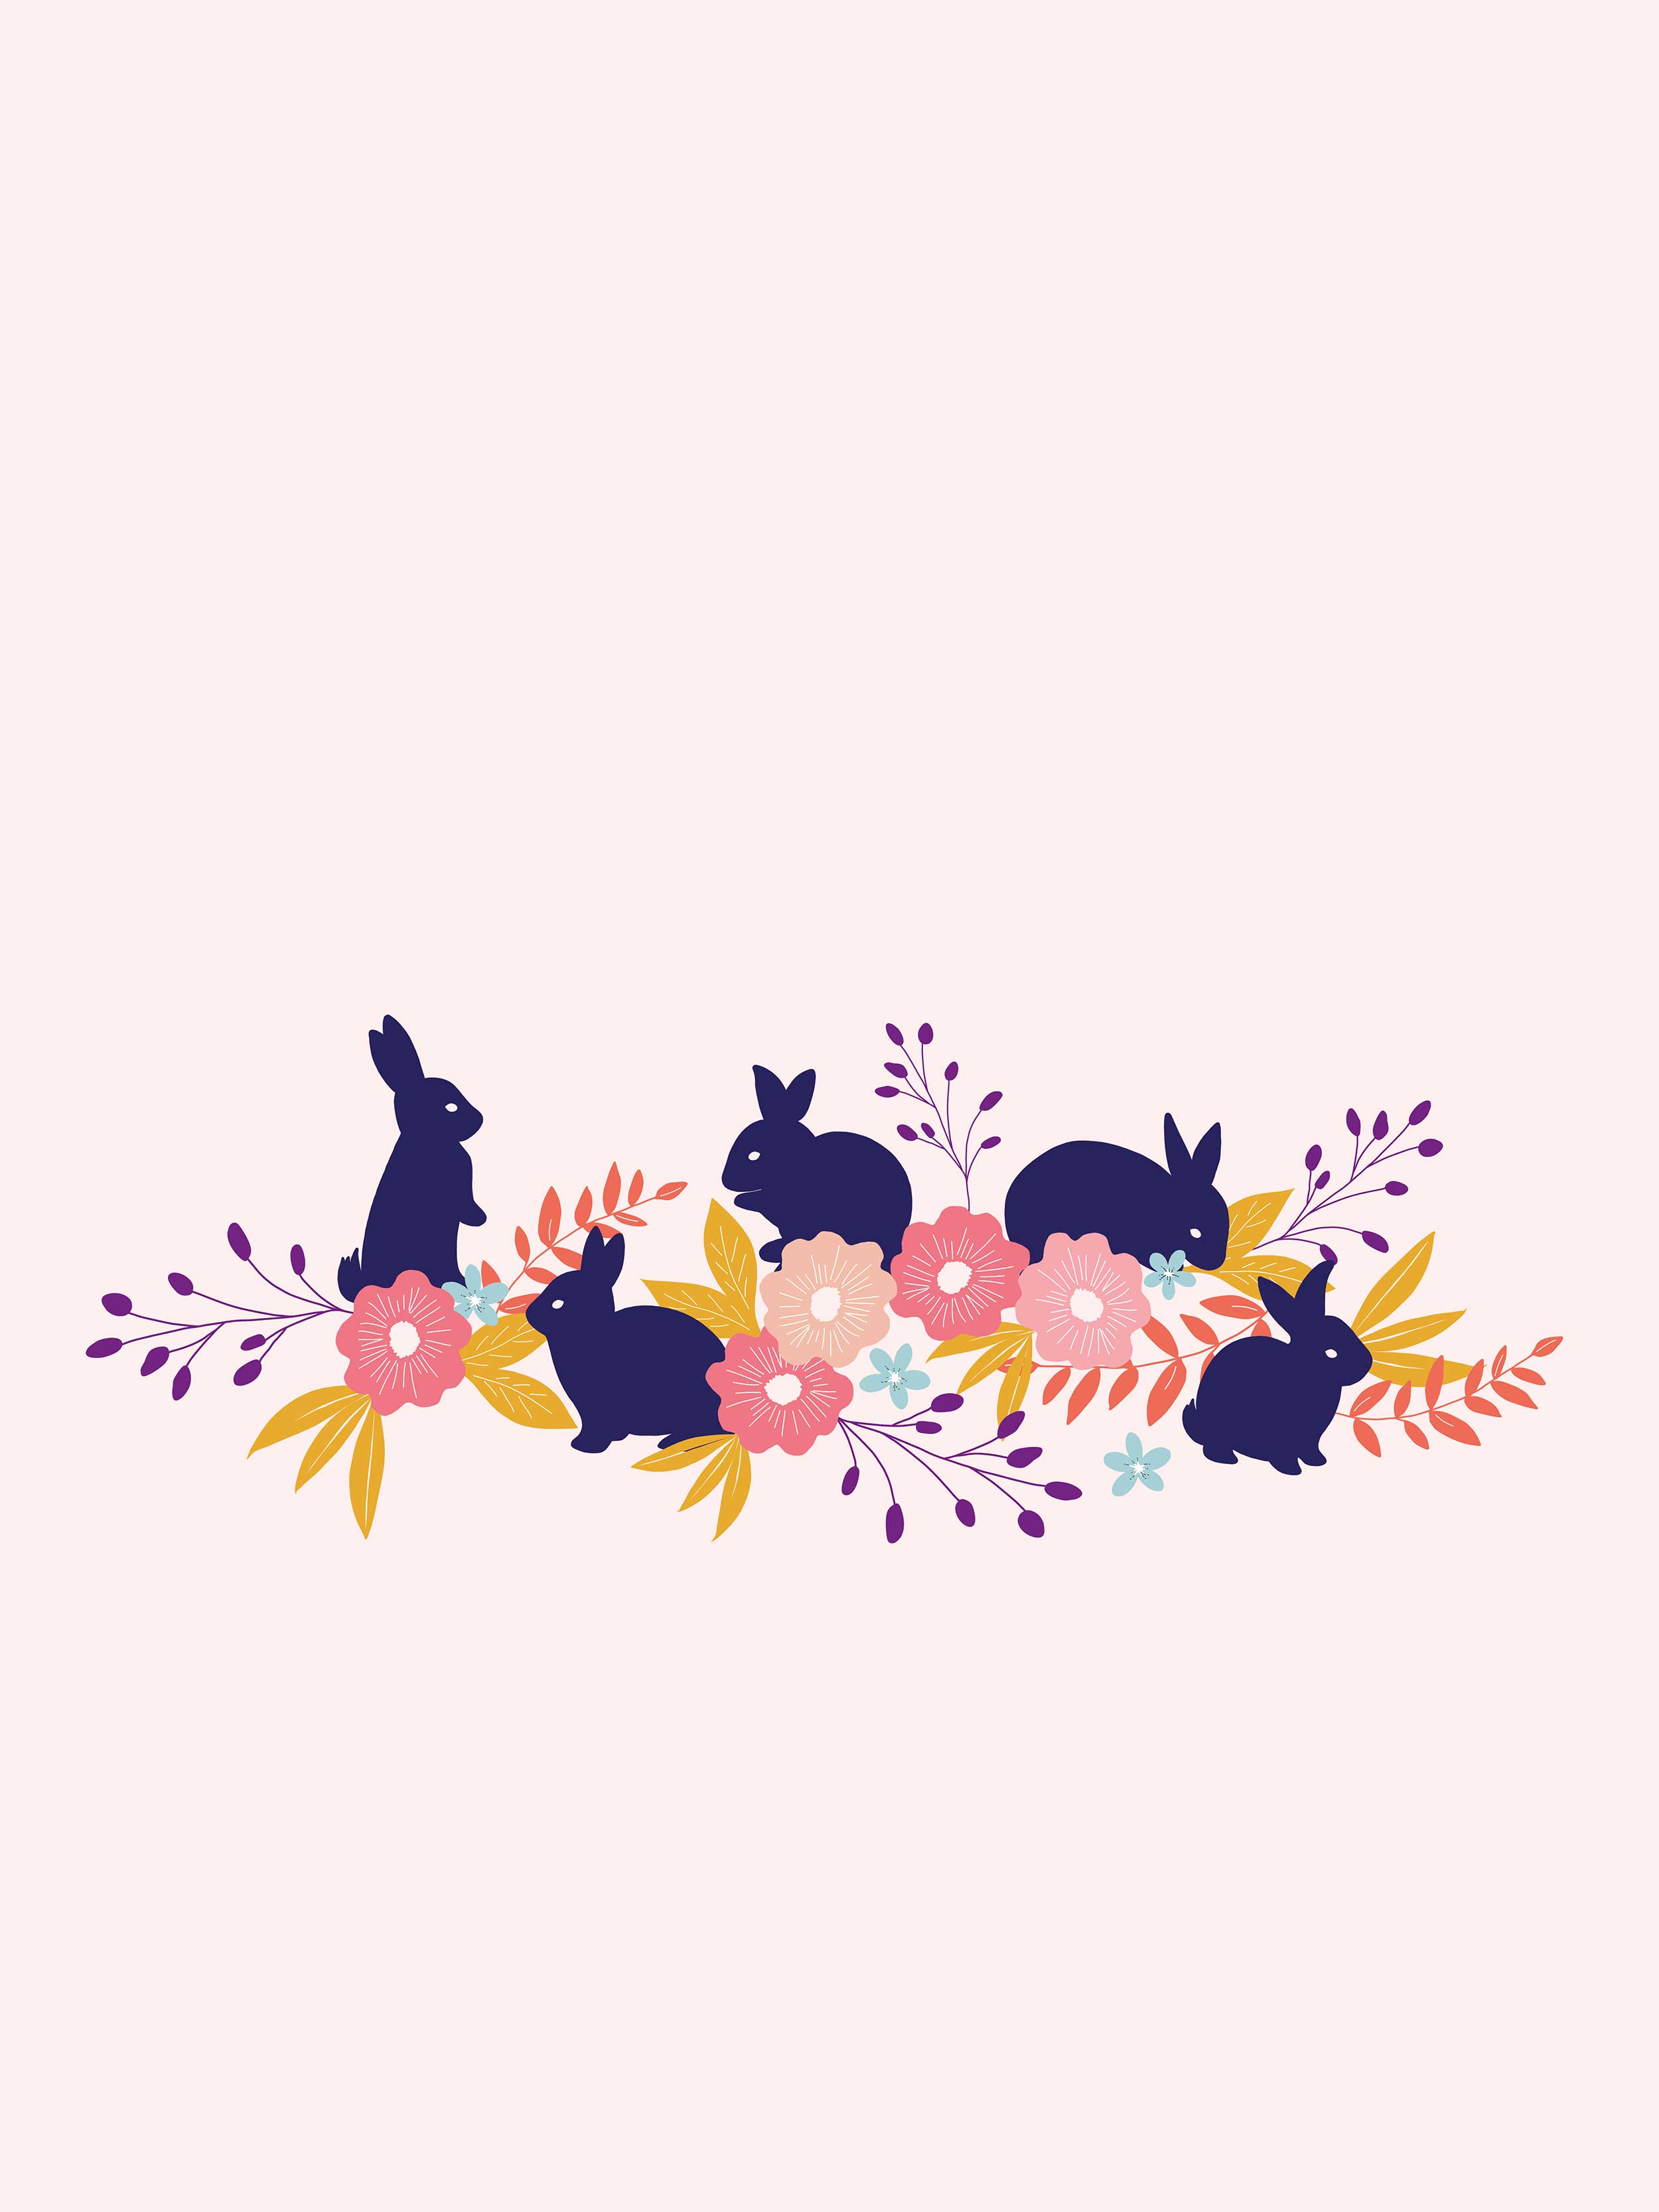 Bunny Floral Wallpaper - Bunny Art Desktop - HD Wallpaper 